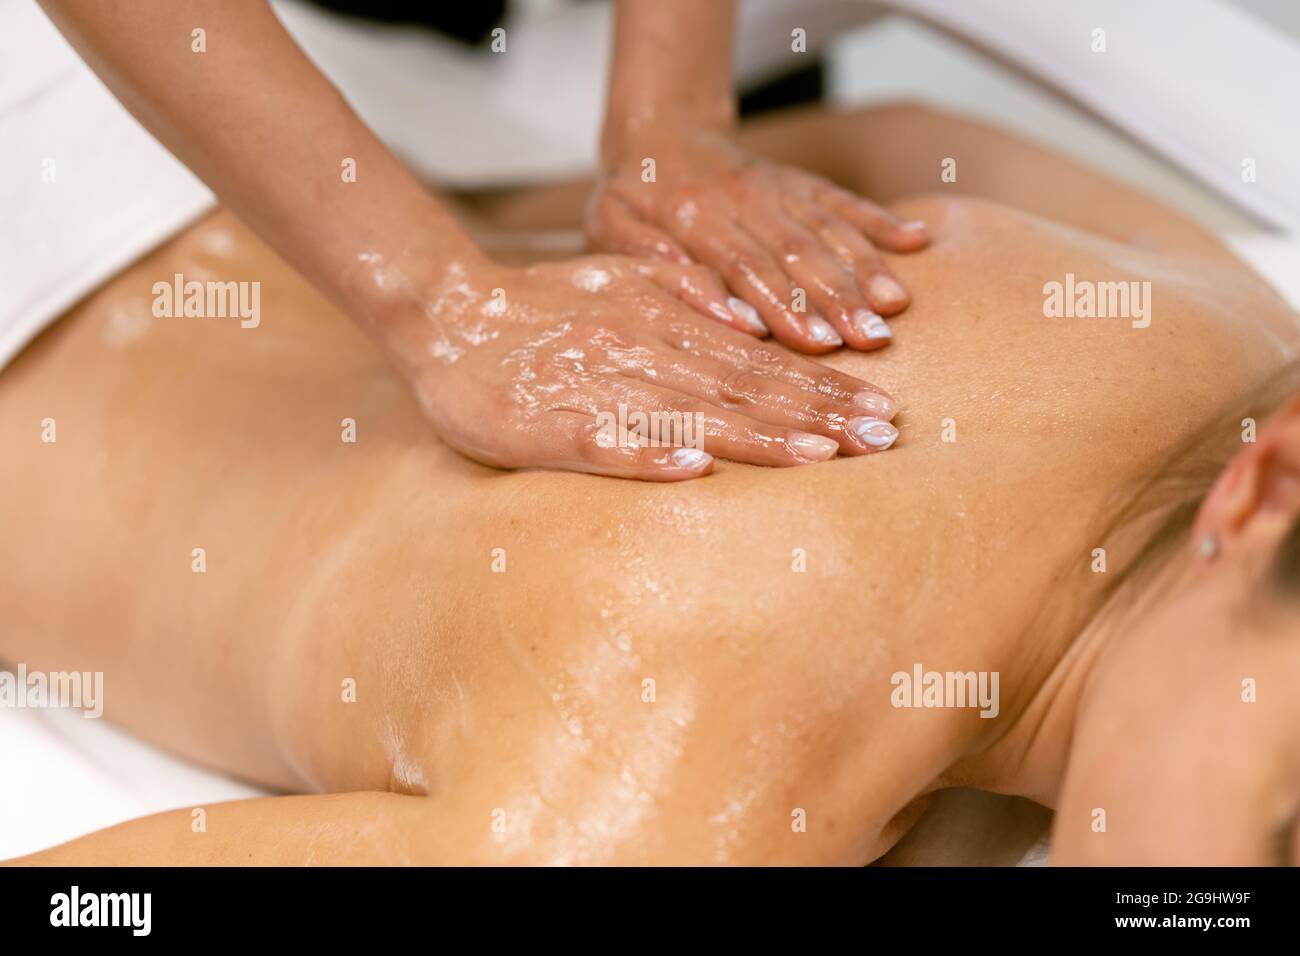 Frau erhält eine Rückenmassage mit Massagekerzenöl. Stockfoto